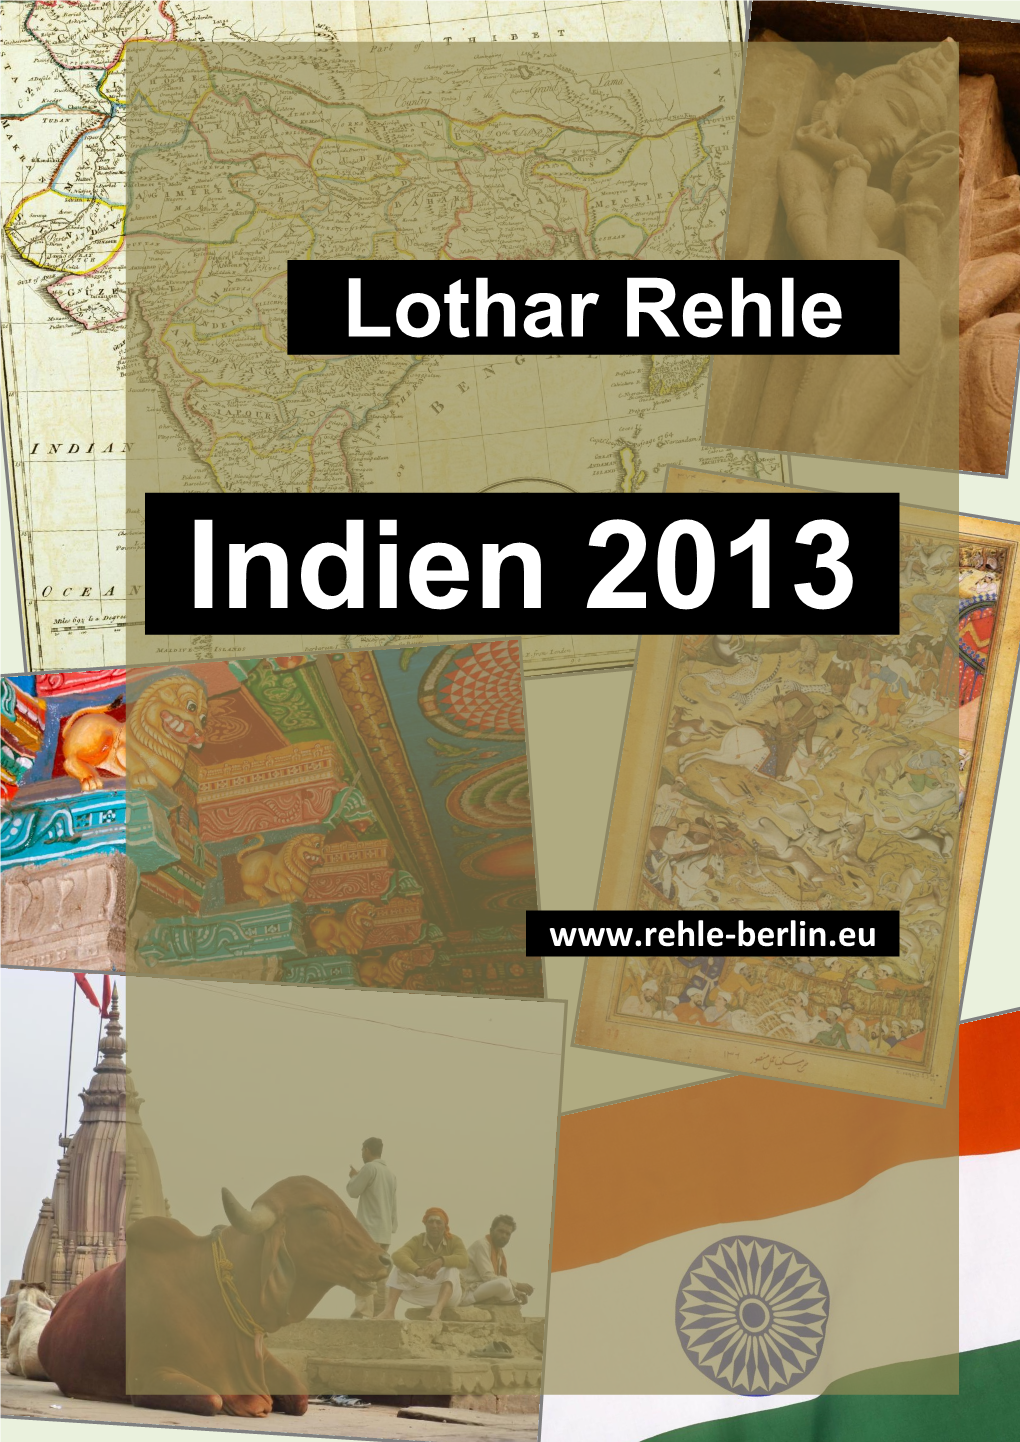 Lothar Rehle